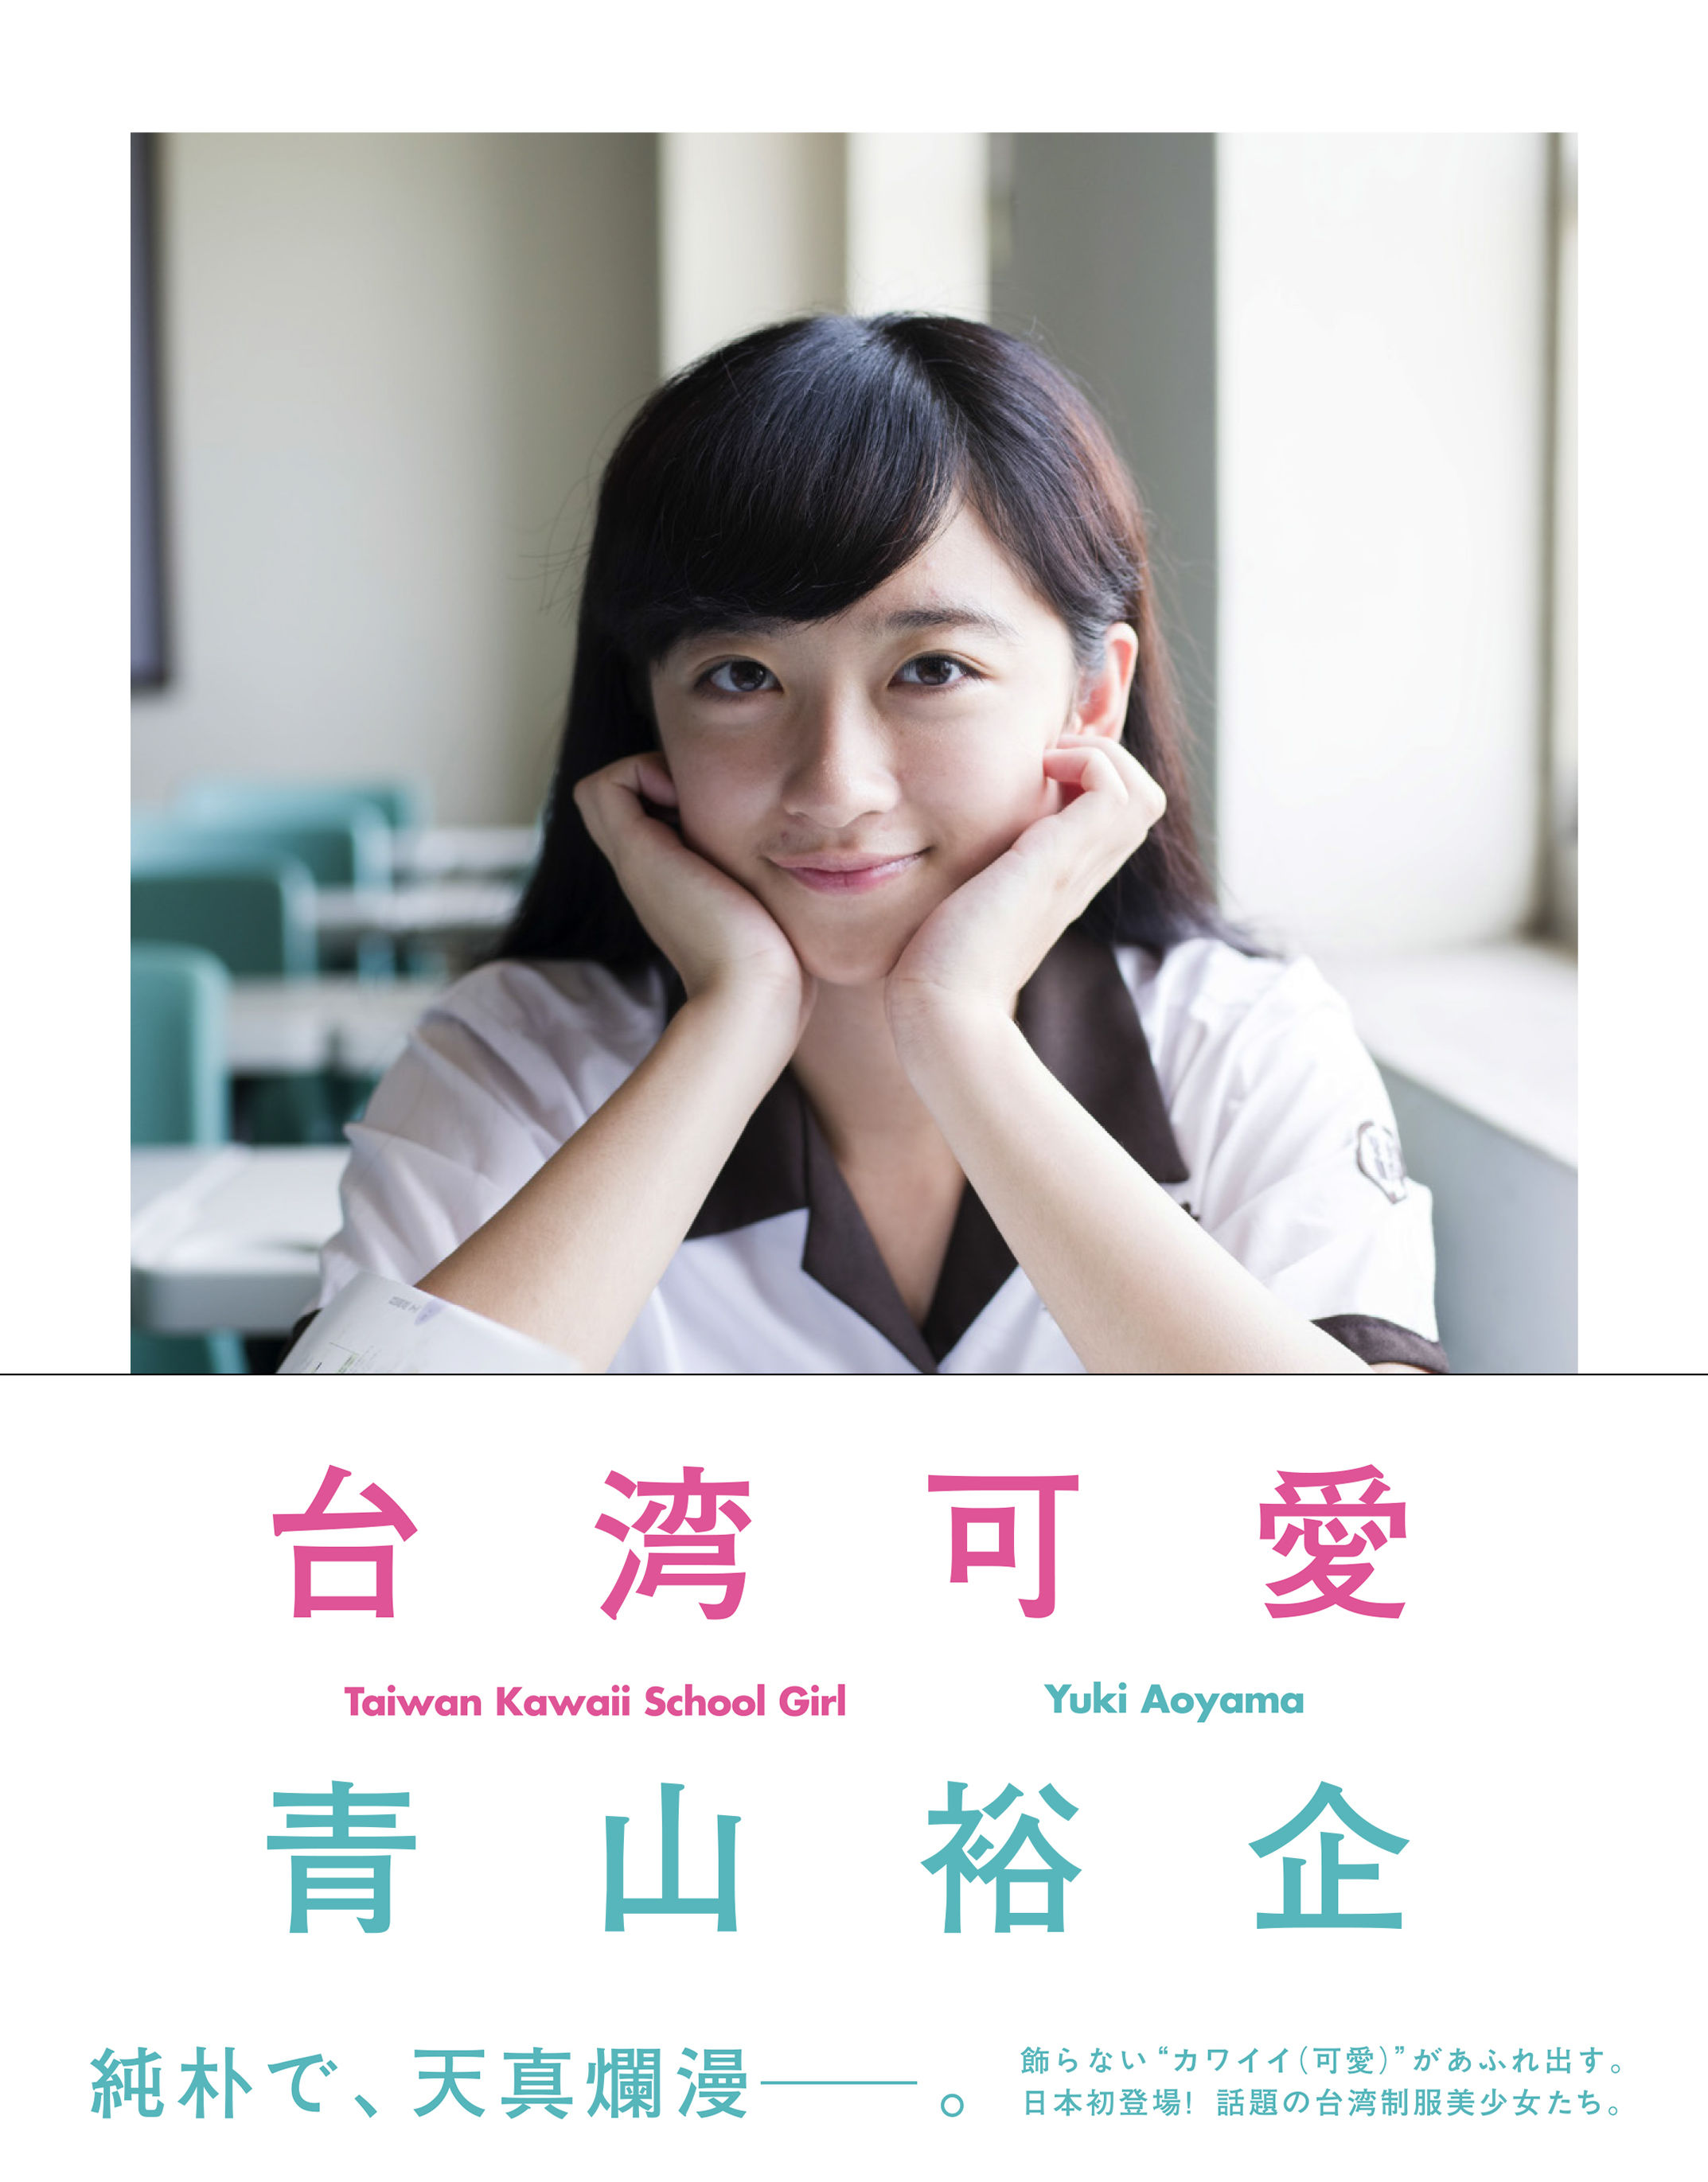 台湾可愛 Taiwan Kawaii School Girl 株式会社美術出版社 アートを社会に実装させる